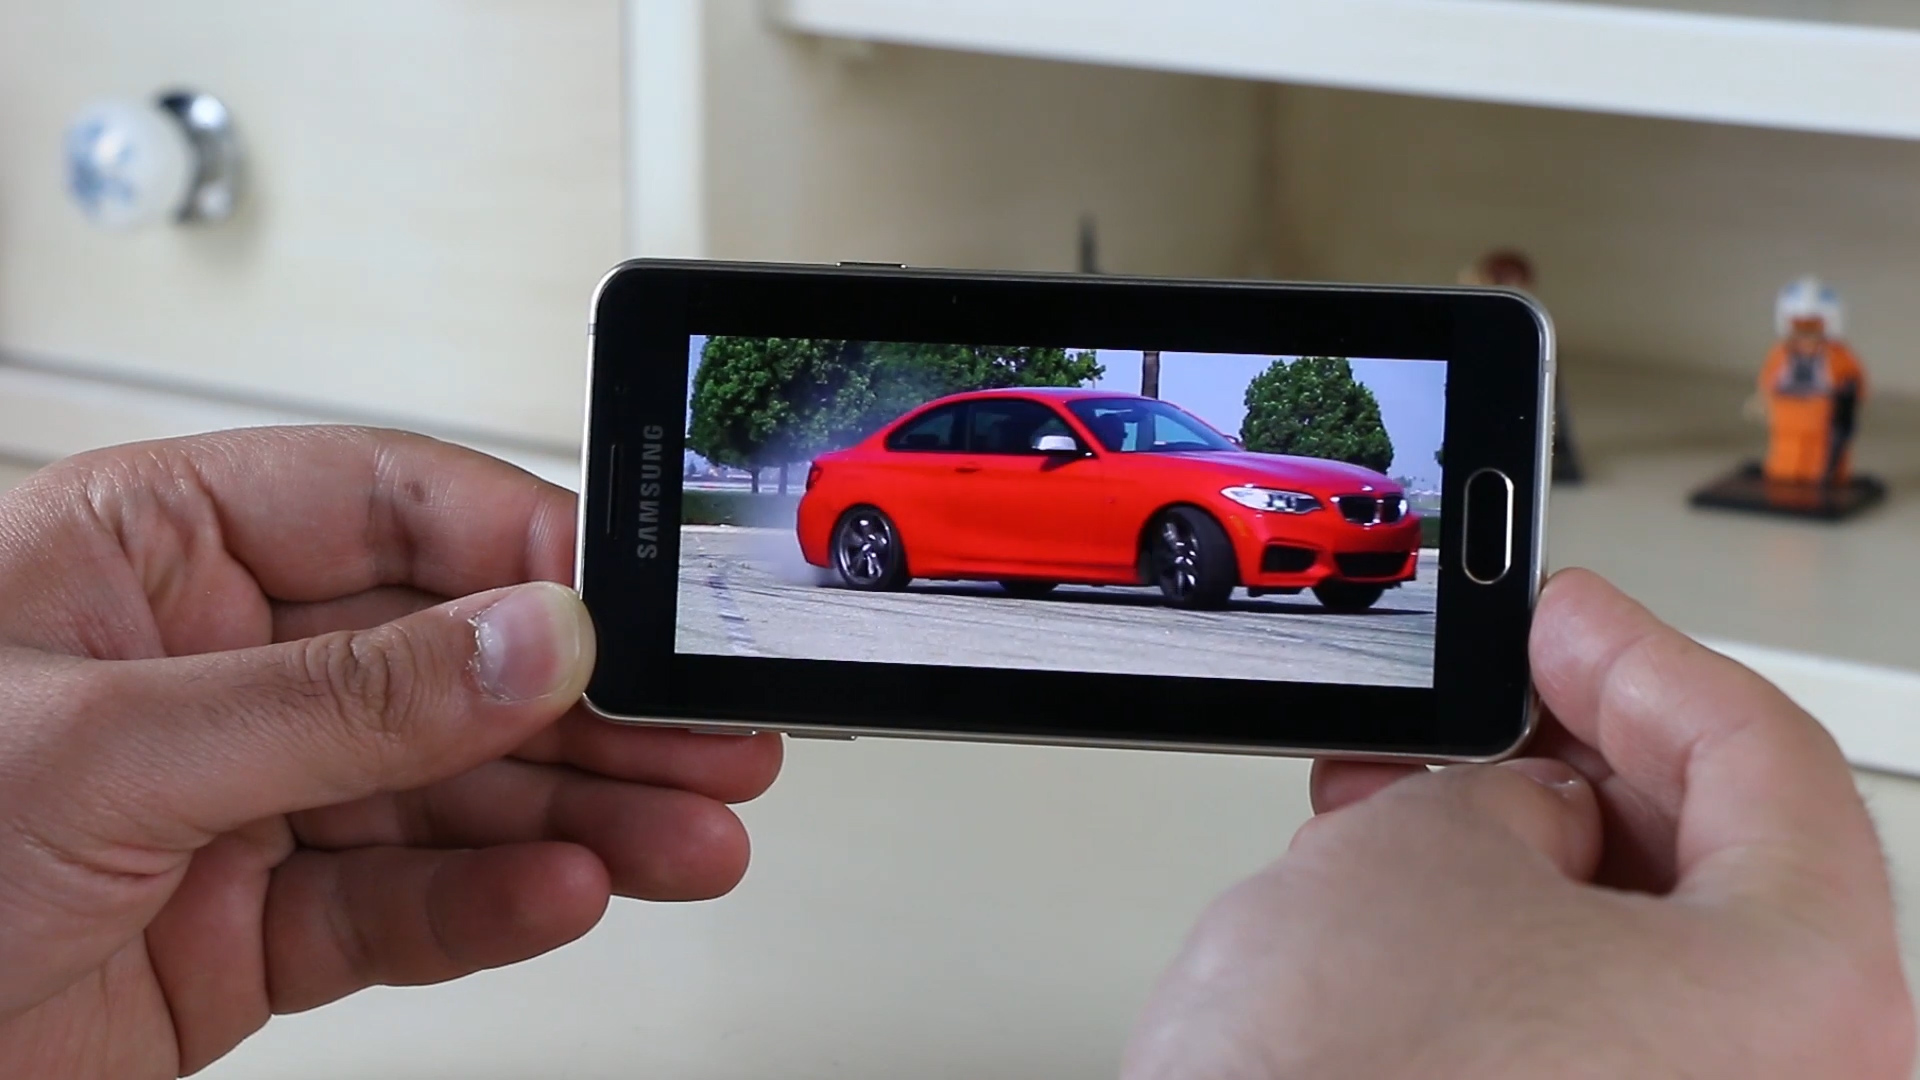 Samsung Galaxy A3 2016 inceleme videosu 'Tasarımıyla öne çıkan telefon'